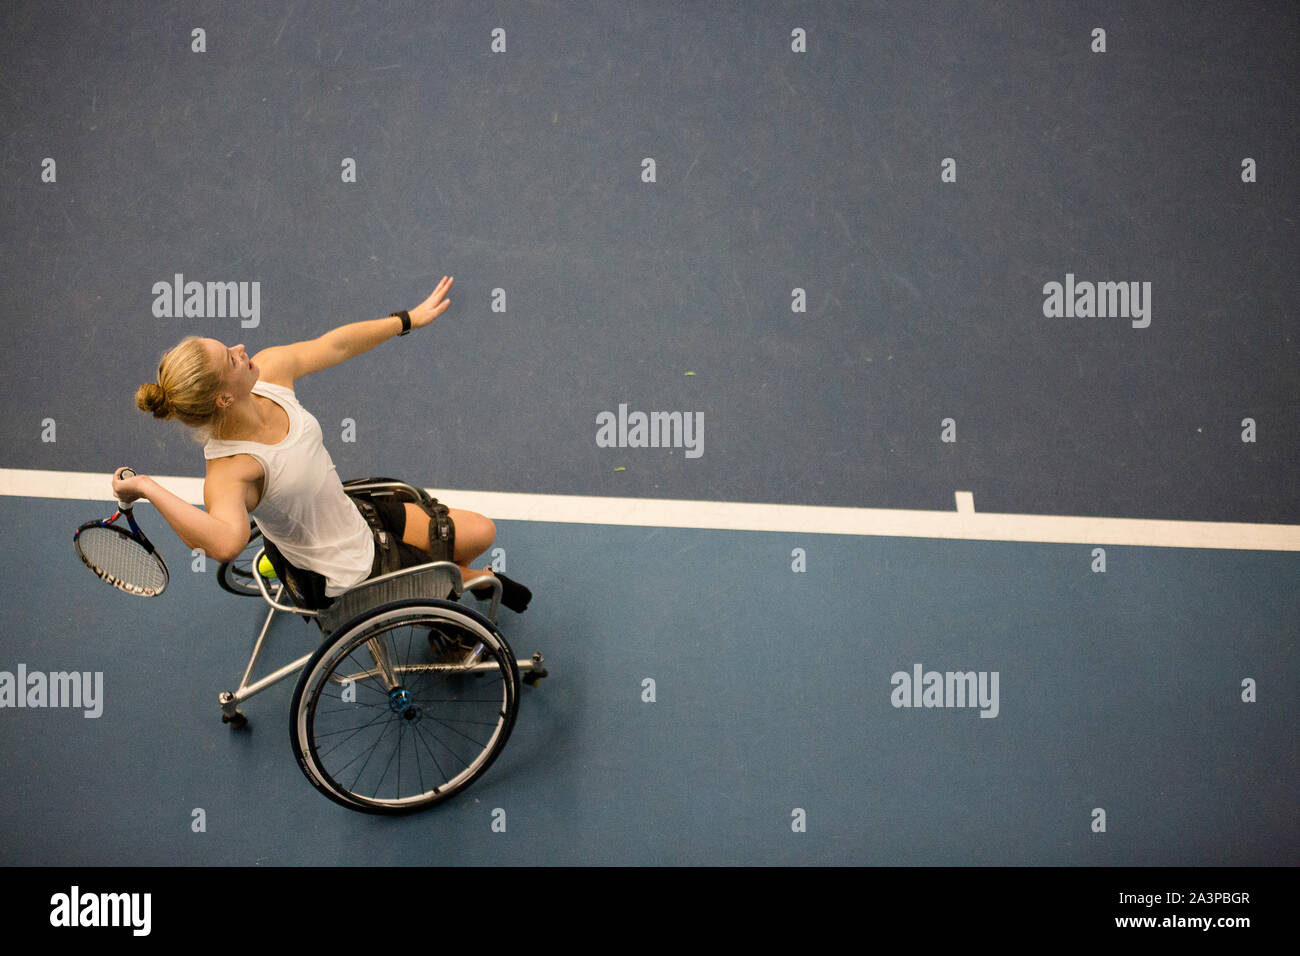 Diede De Groot am Spielen internationale Rollstuhl Turnier. Sie ist weltweit die Nummer eins. Stockfoto